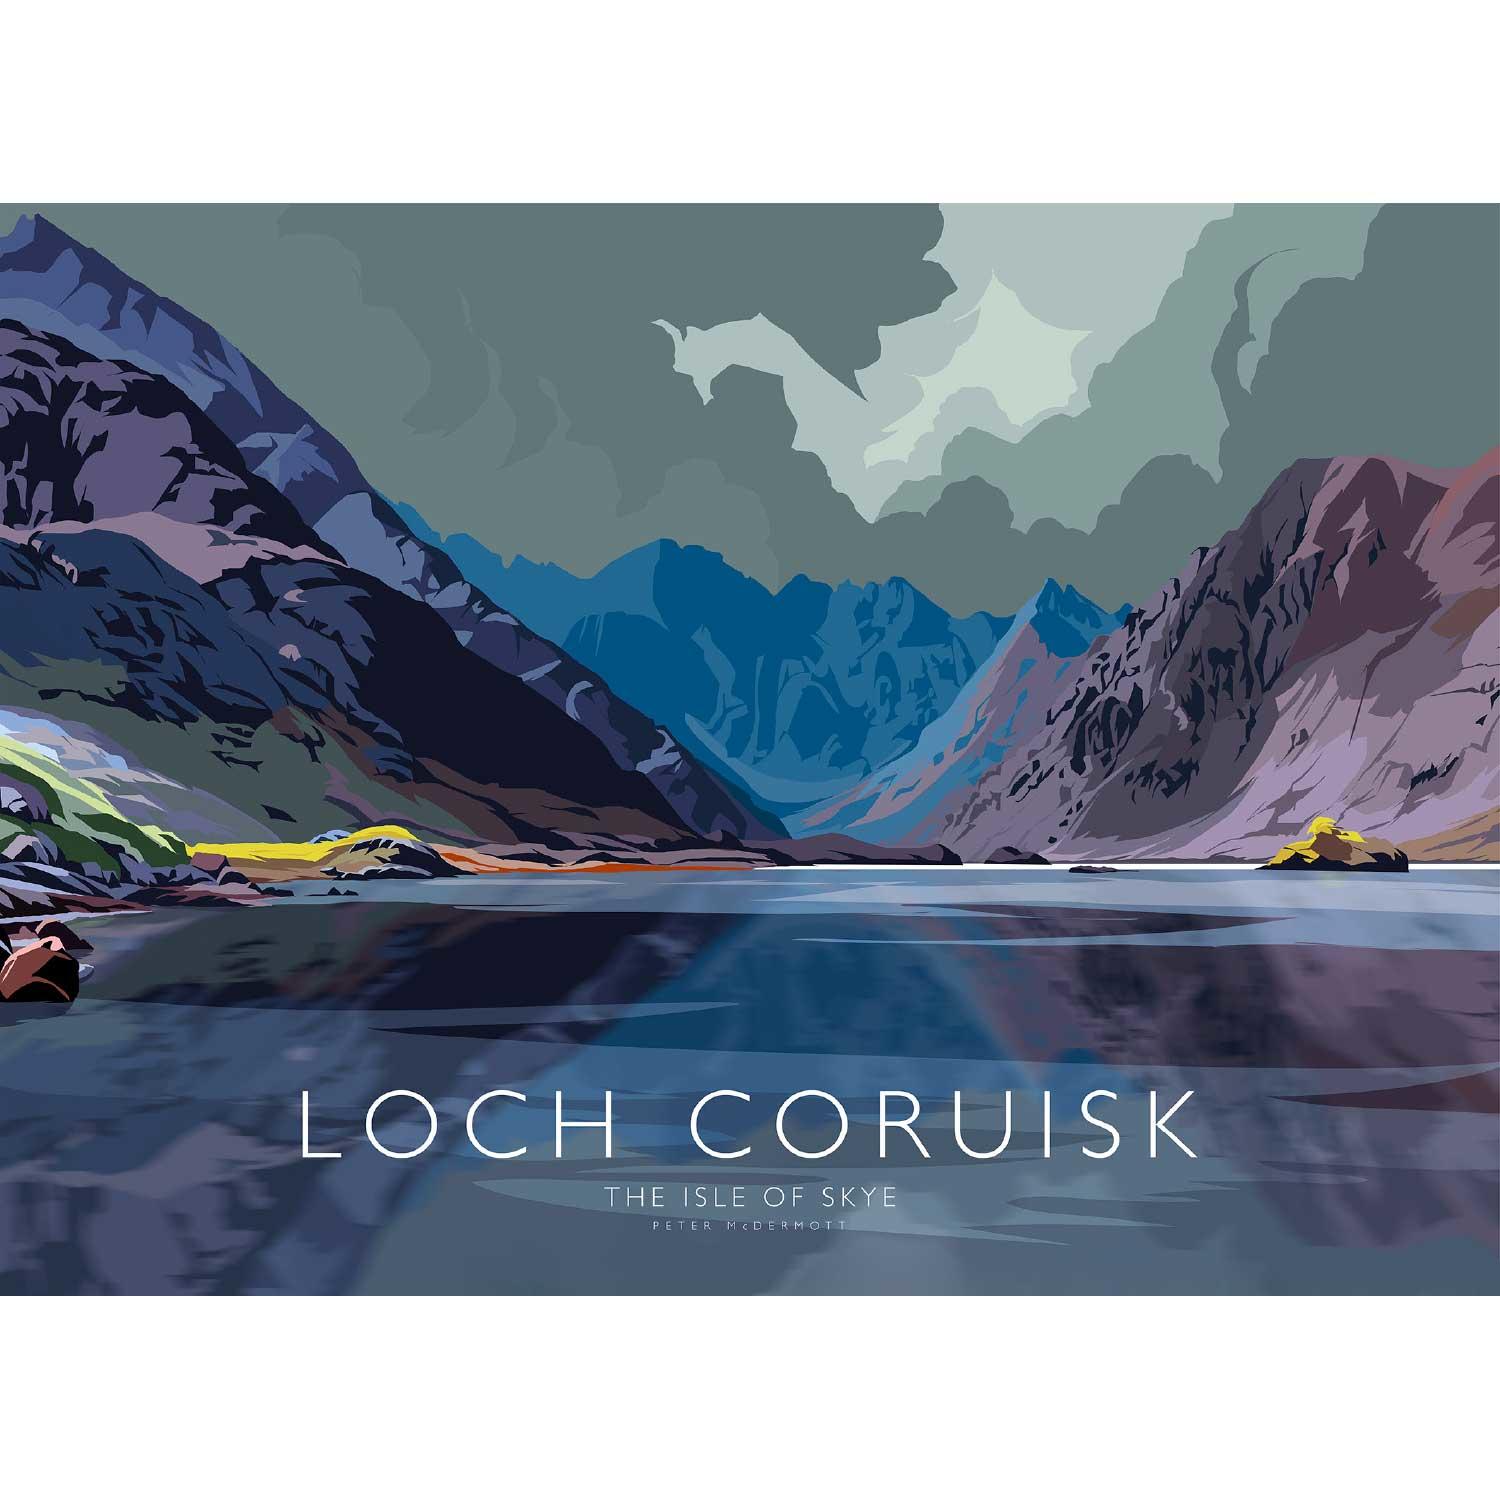 Loch Coruisk by Peter McDermott